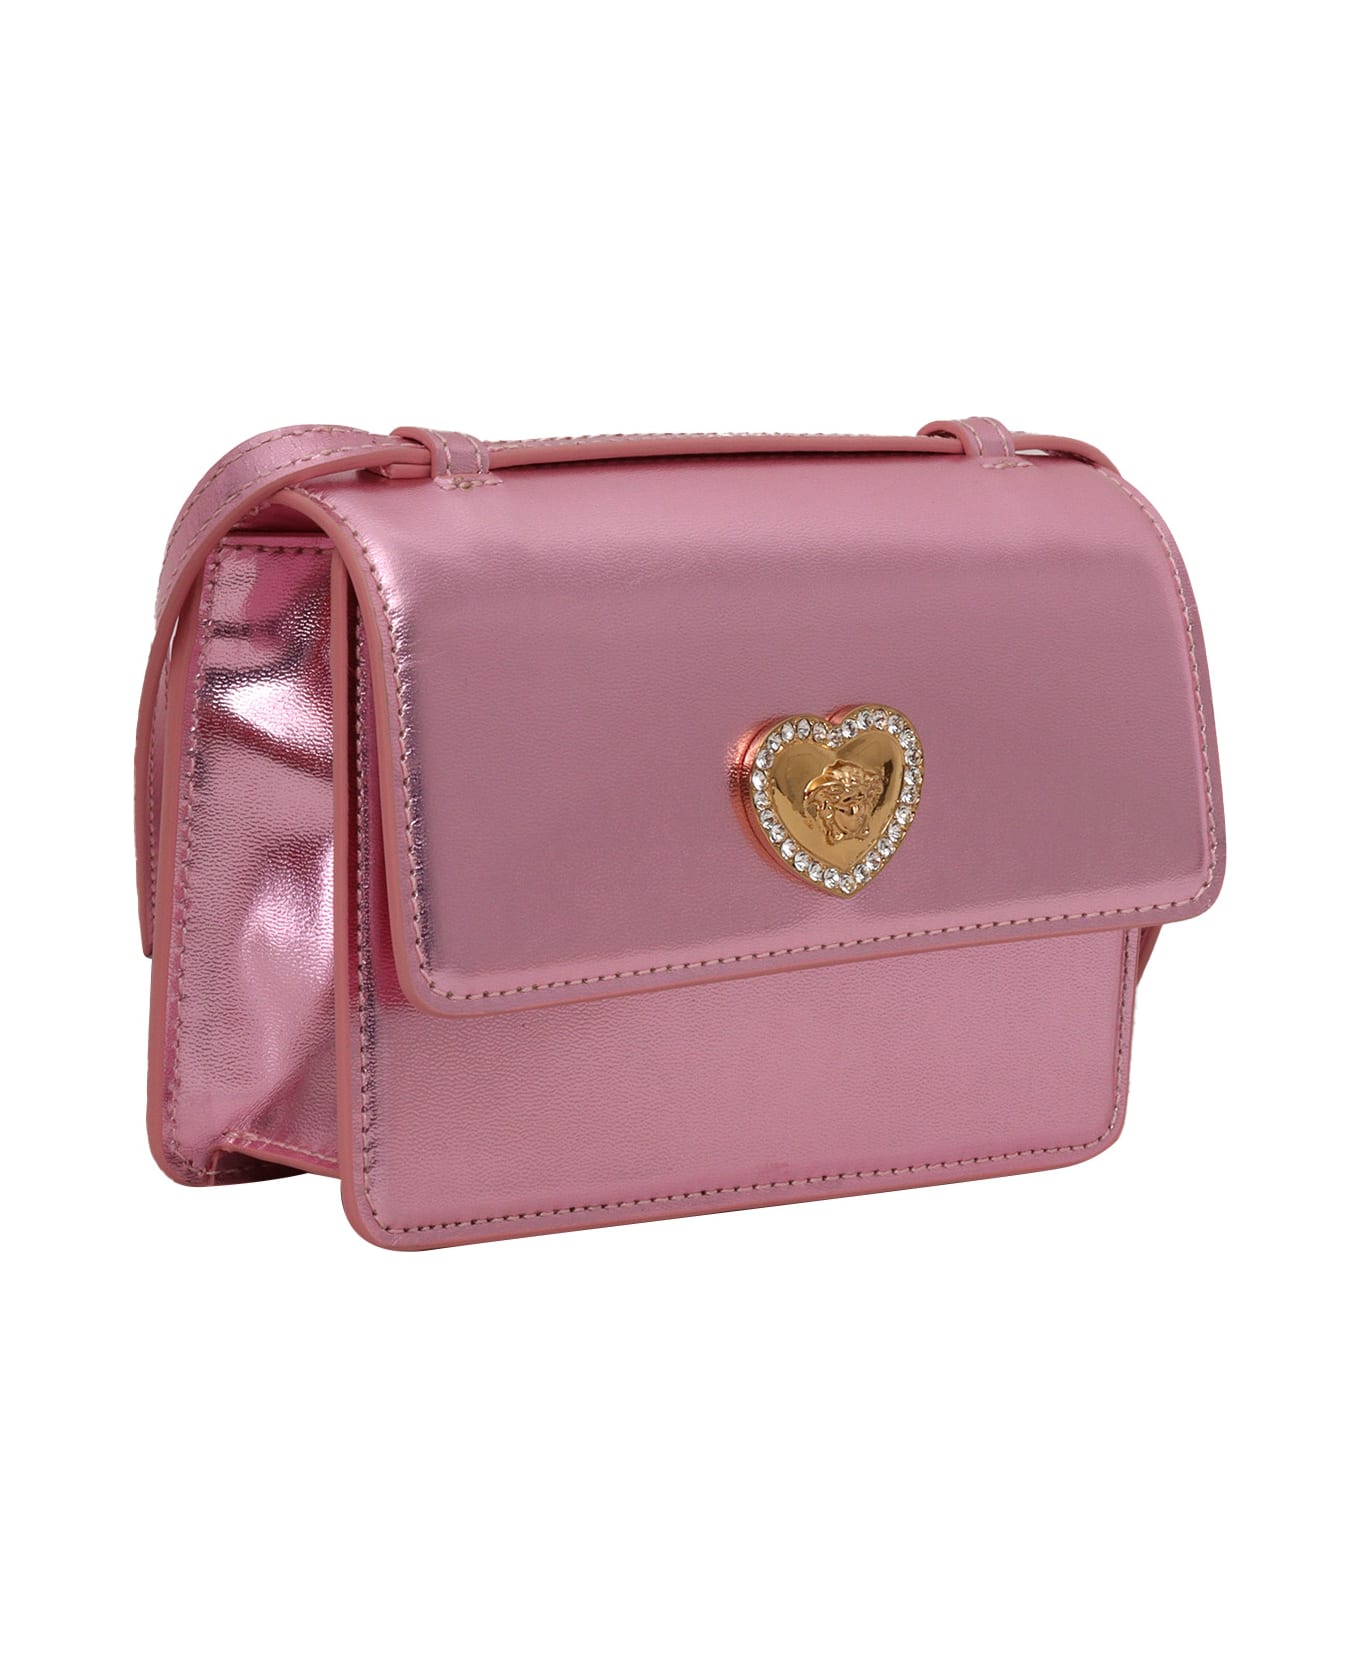 Versace Pink Metallic Bag - PINK